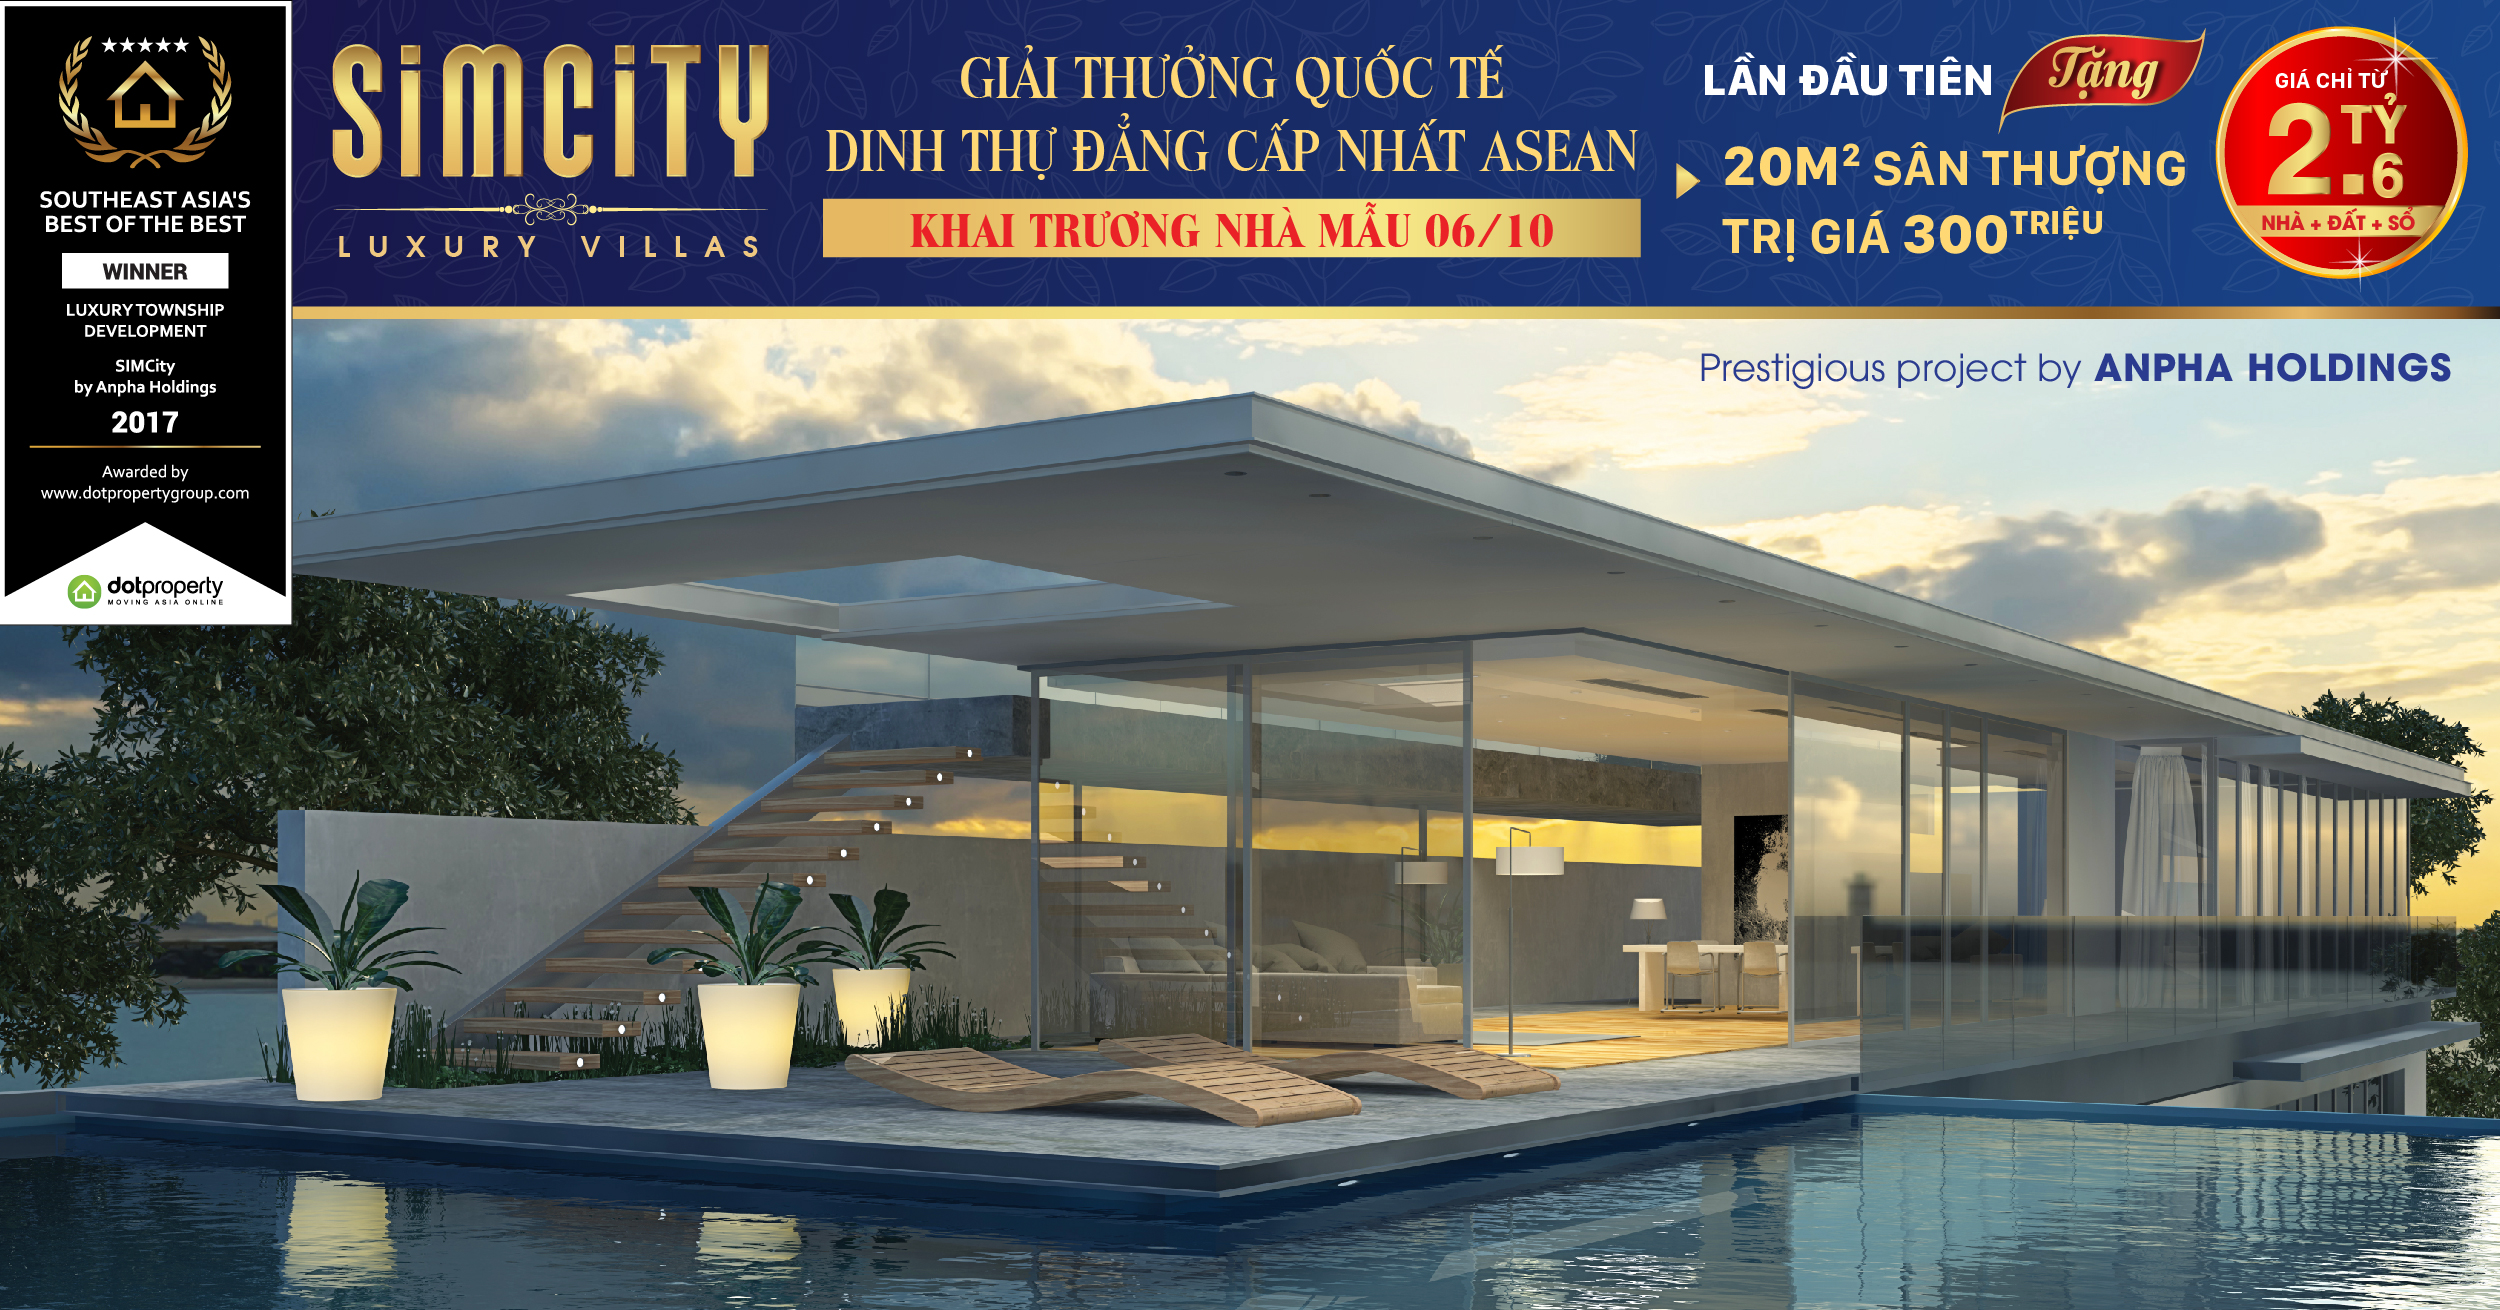 Chính sách bán hàng Simcity - Luxury Villa tháng 10/2017